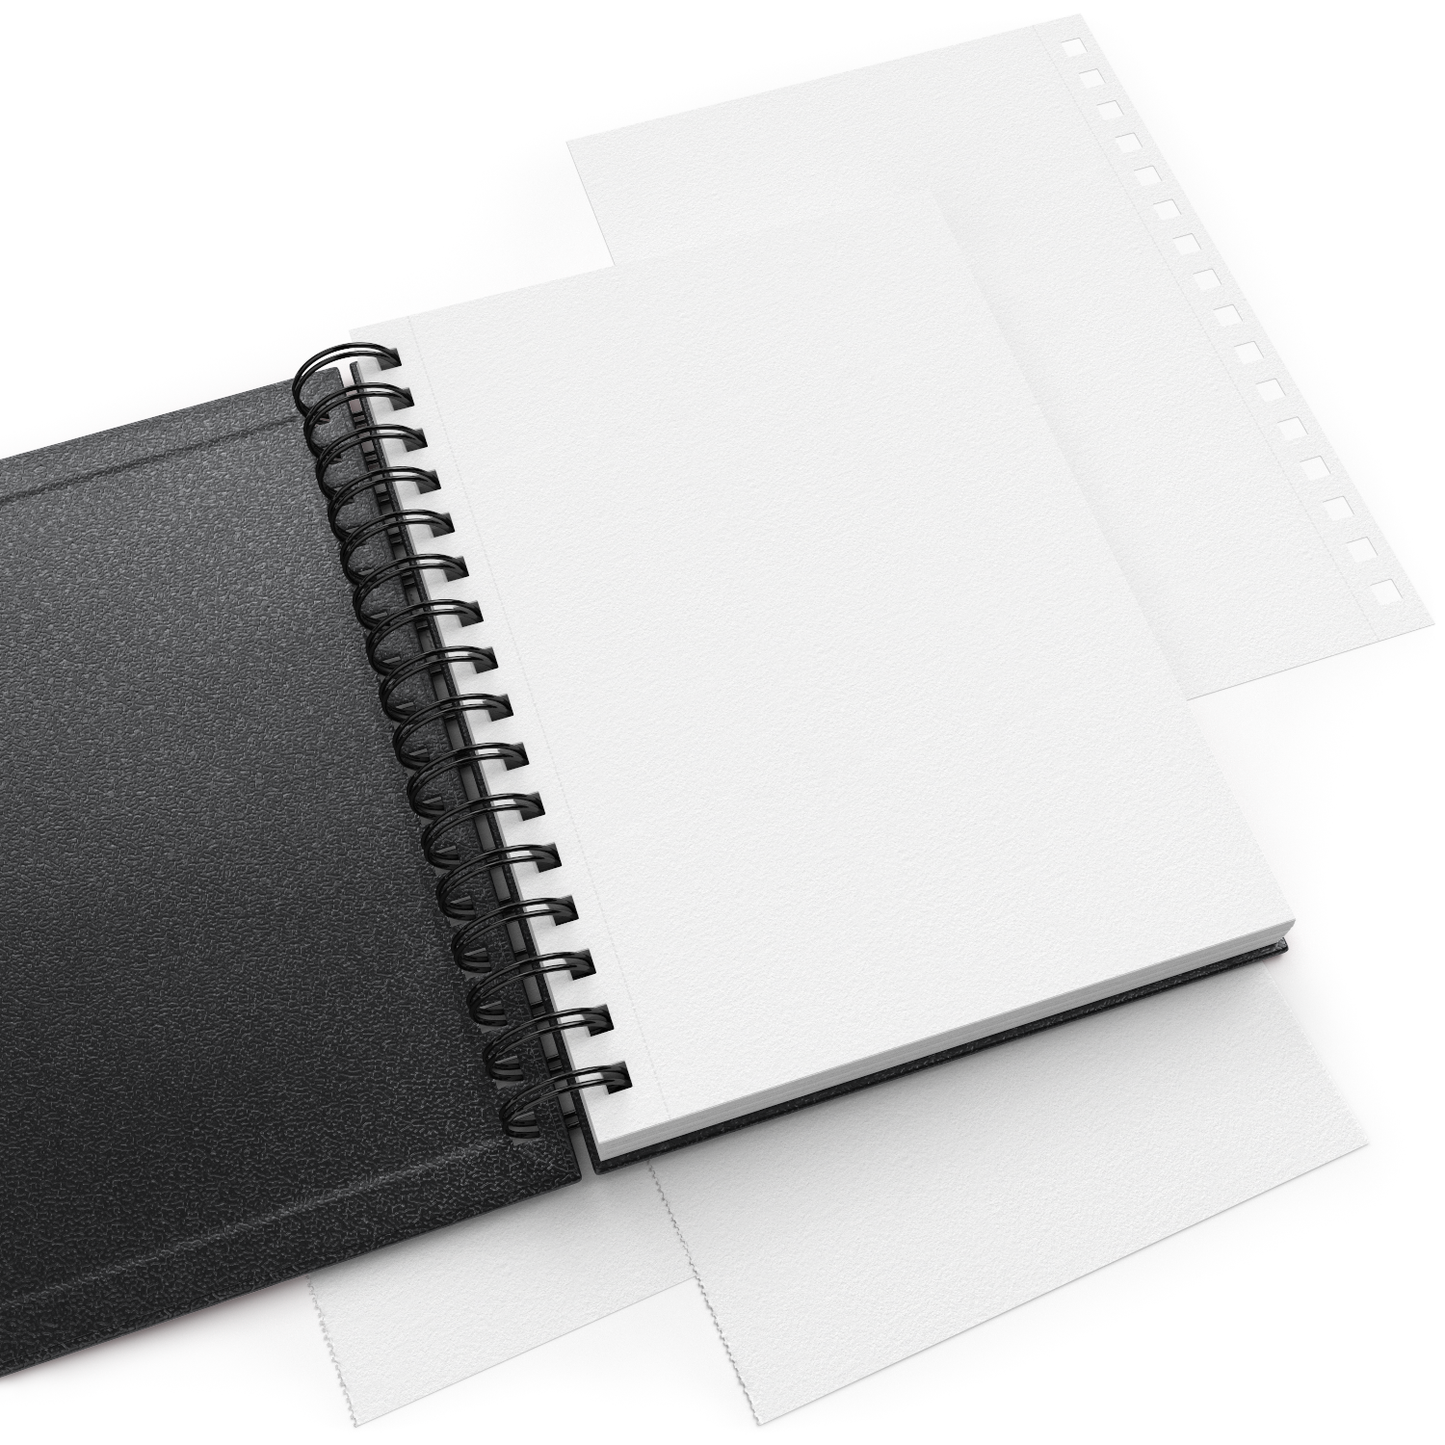 Sketchbook, Spiral-Bound Hardcover, Black, 5.5" x 8.5”